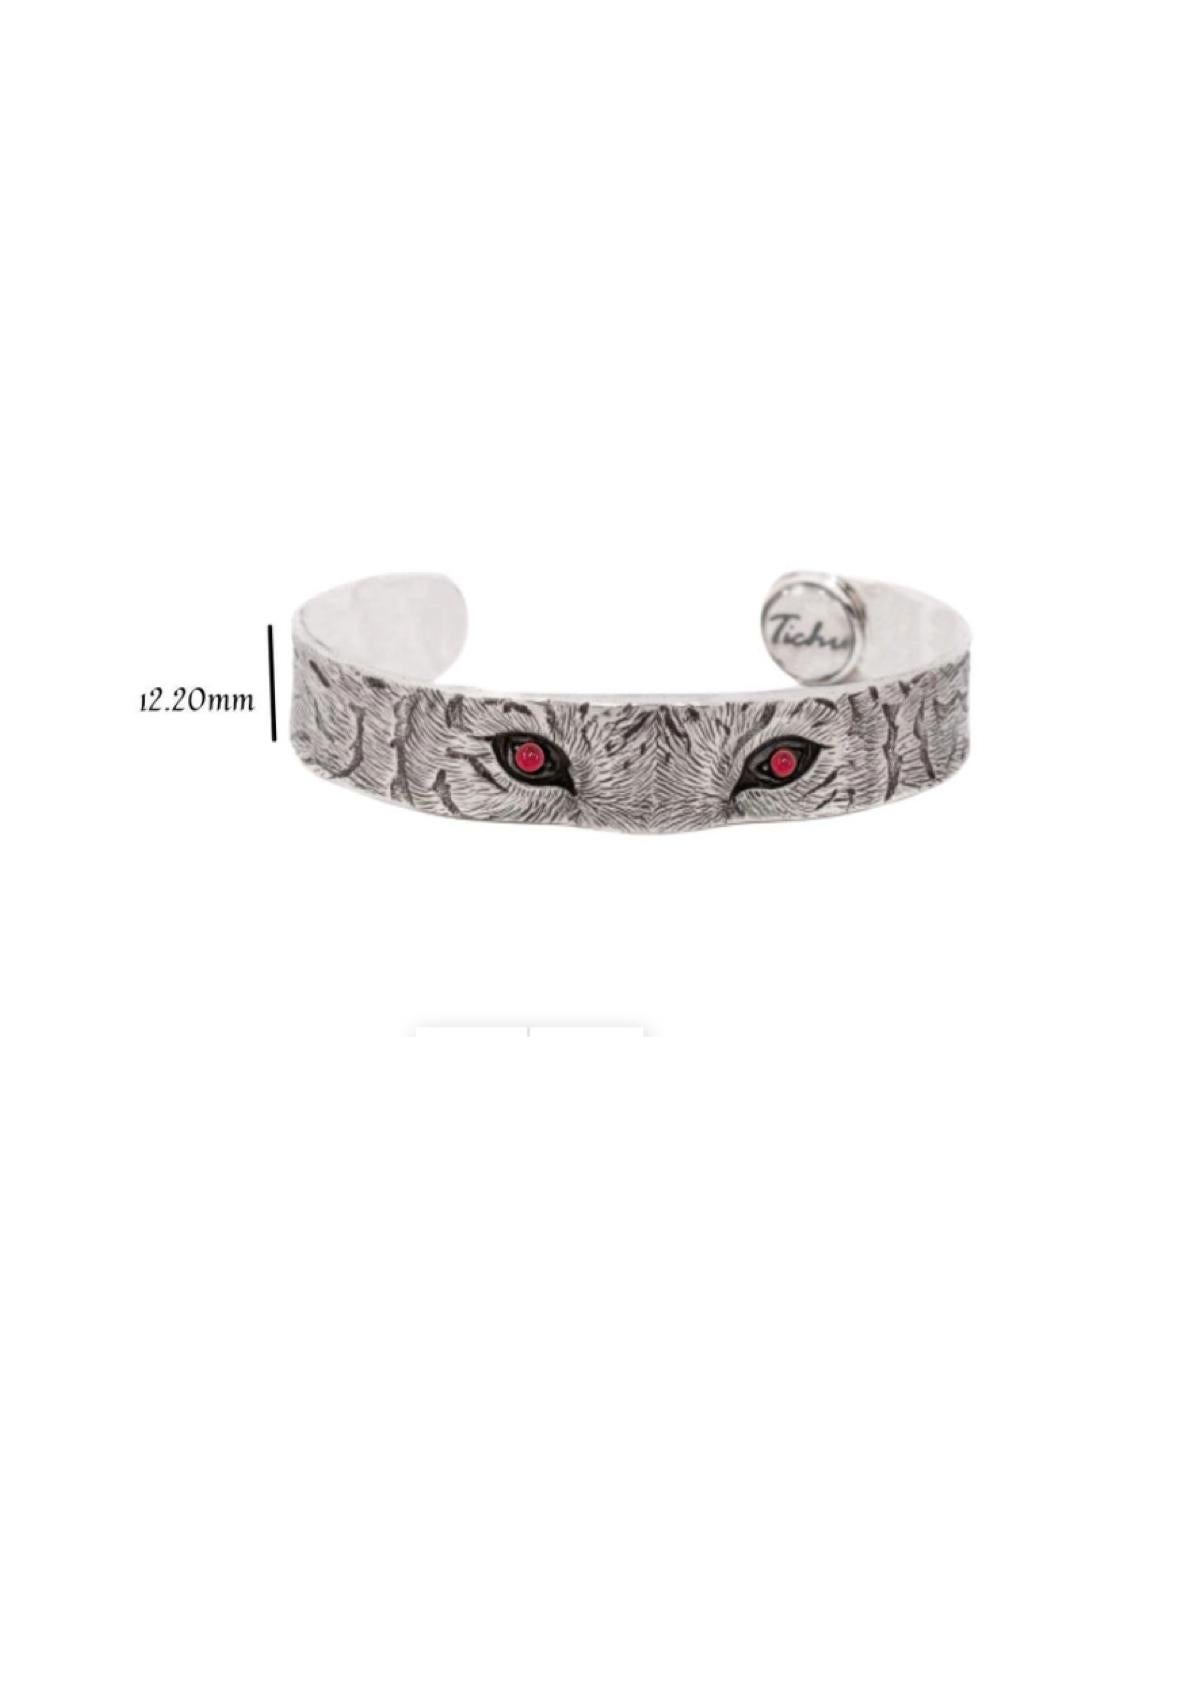 Cabochon Tichu Ruby Tiger Eye Cuff in Sterling Silver & Crystal Quartz 'Size L' For Sale